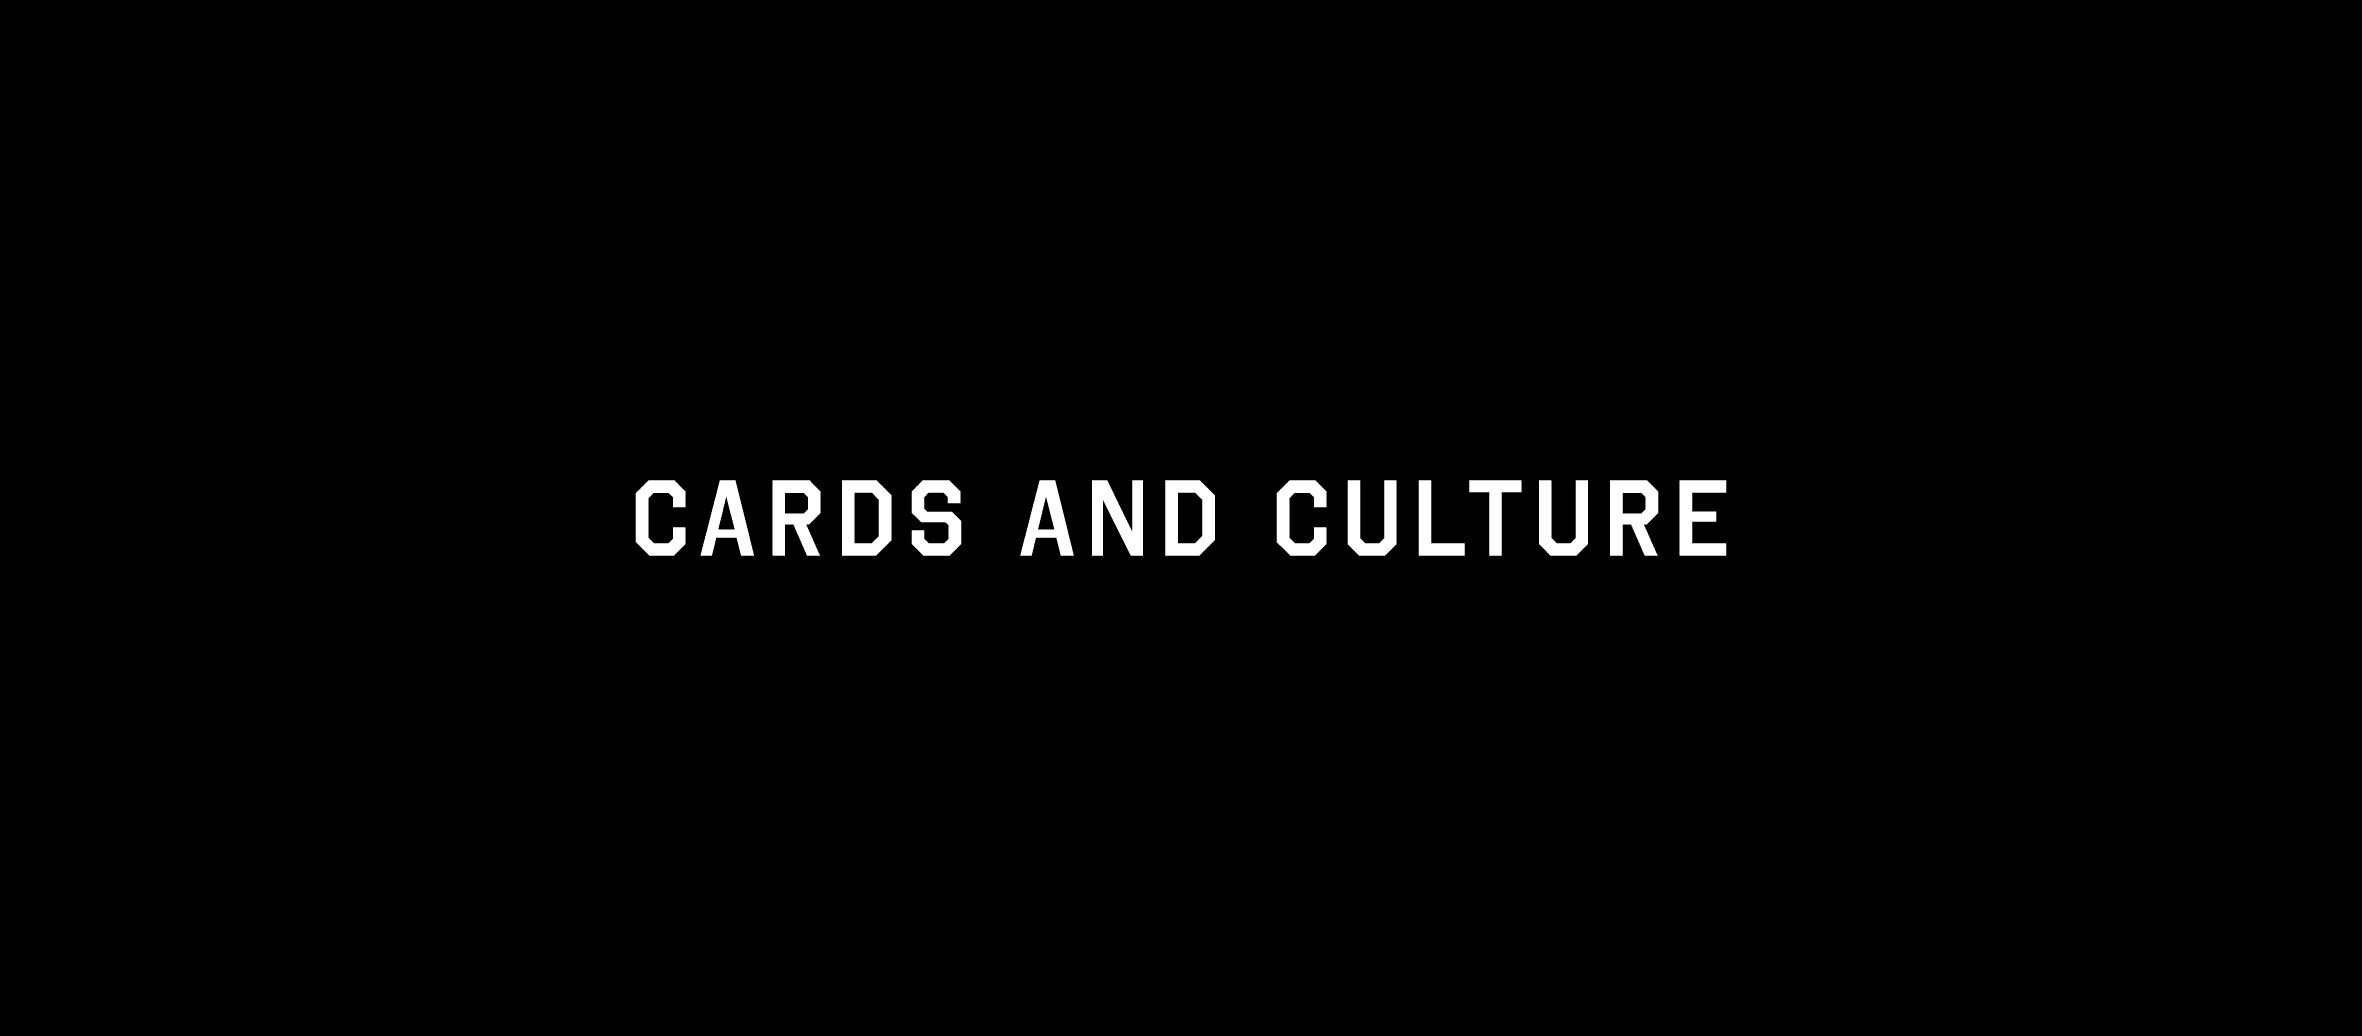 cardsandculture 横幅